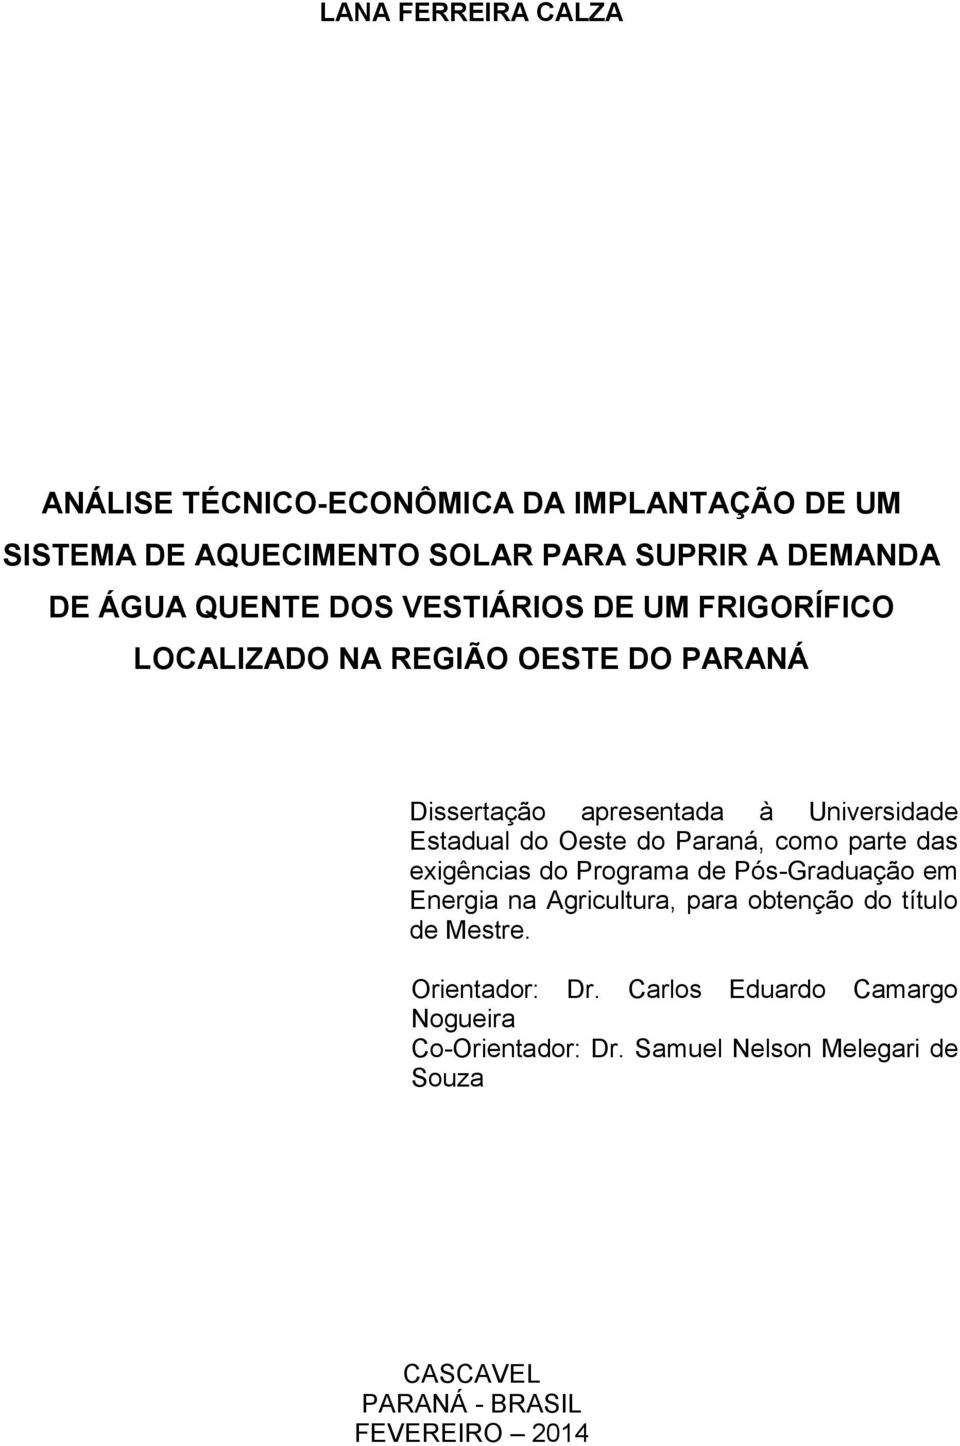 Oeste do Paraná, como parte das exigências do Programa de Pós-Graduação em Energia na Agricultura, para obtenção do título de